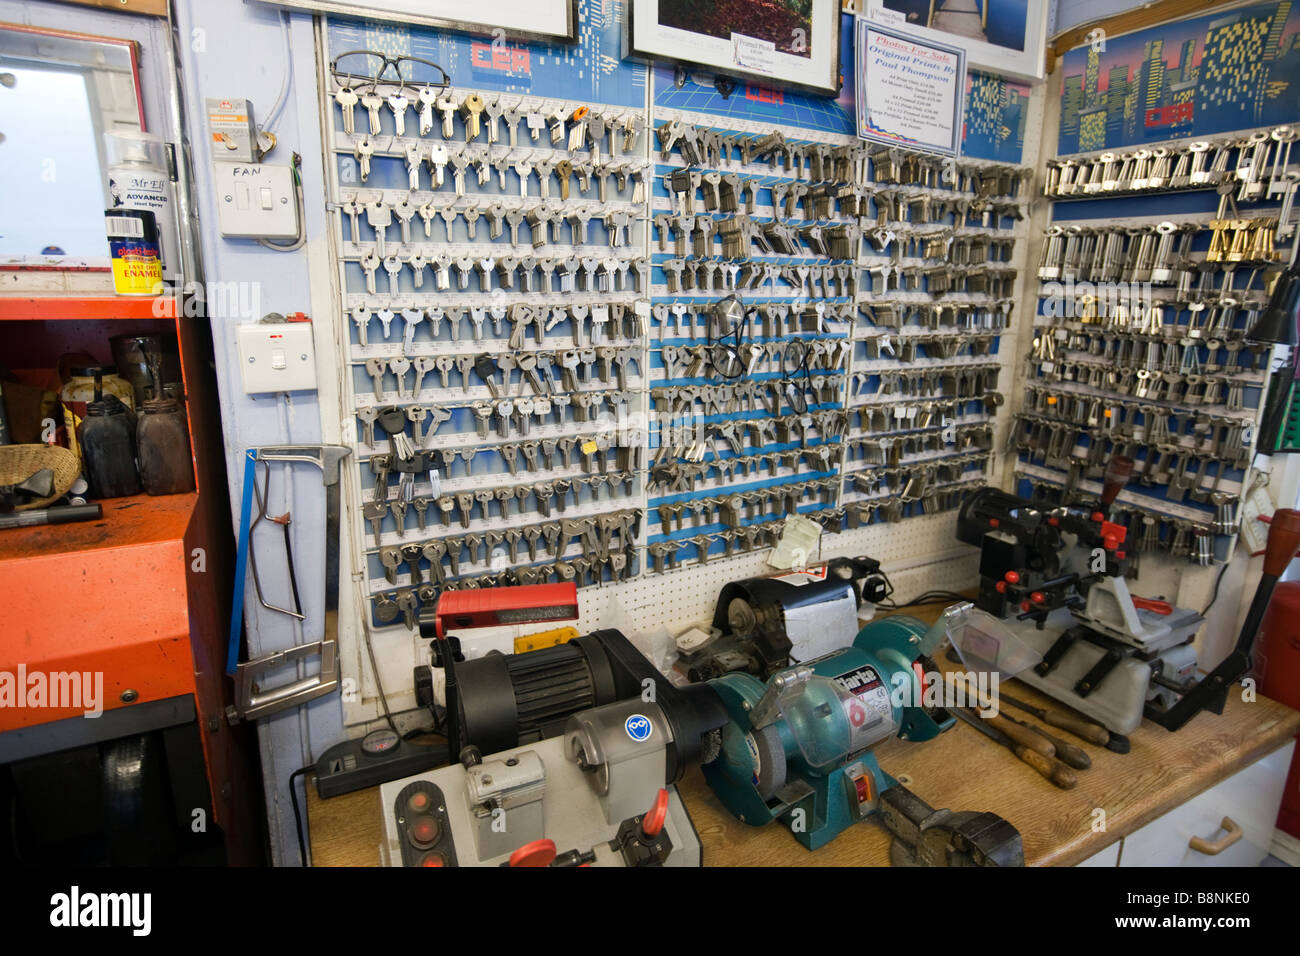 Visualizzazione dei grezzi di lavorazione per chiavi per il taglio a riparatori in louth, lincs, Inghilterra tasto più macchine da taglio, frese per chiavi, fabbri, negozio di fabbro, chiave Foto Stock